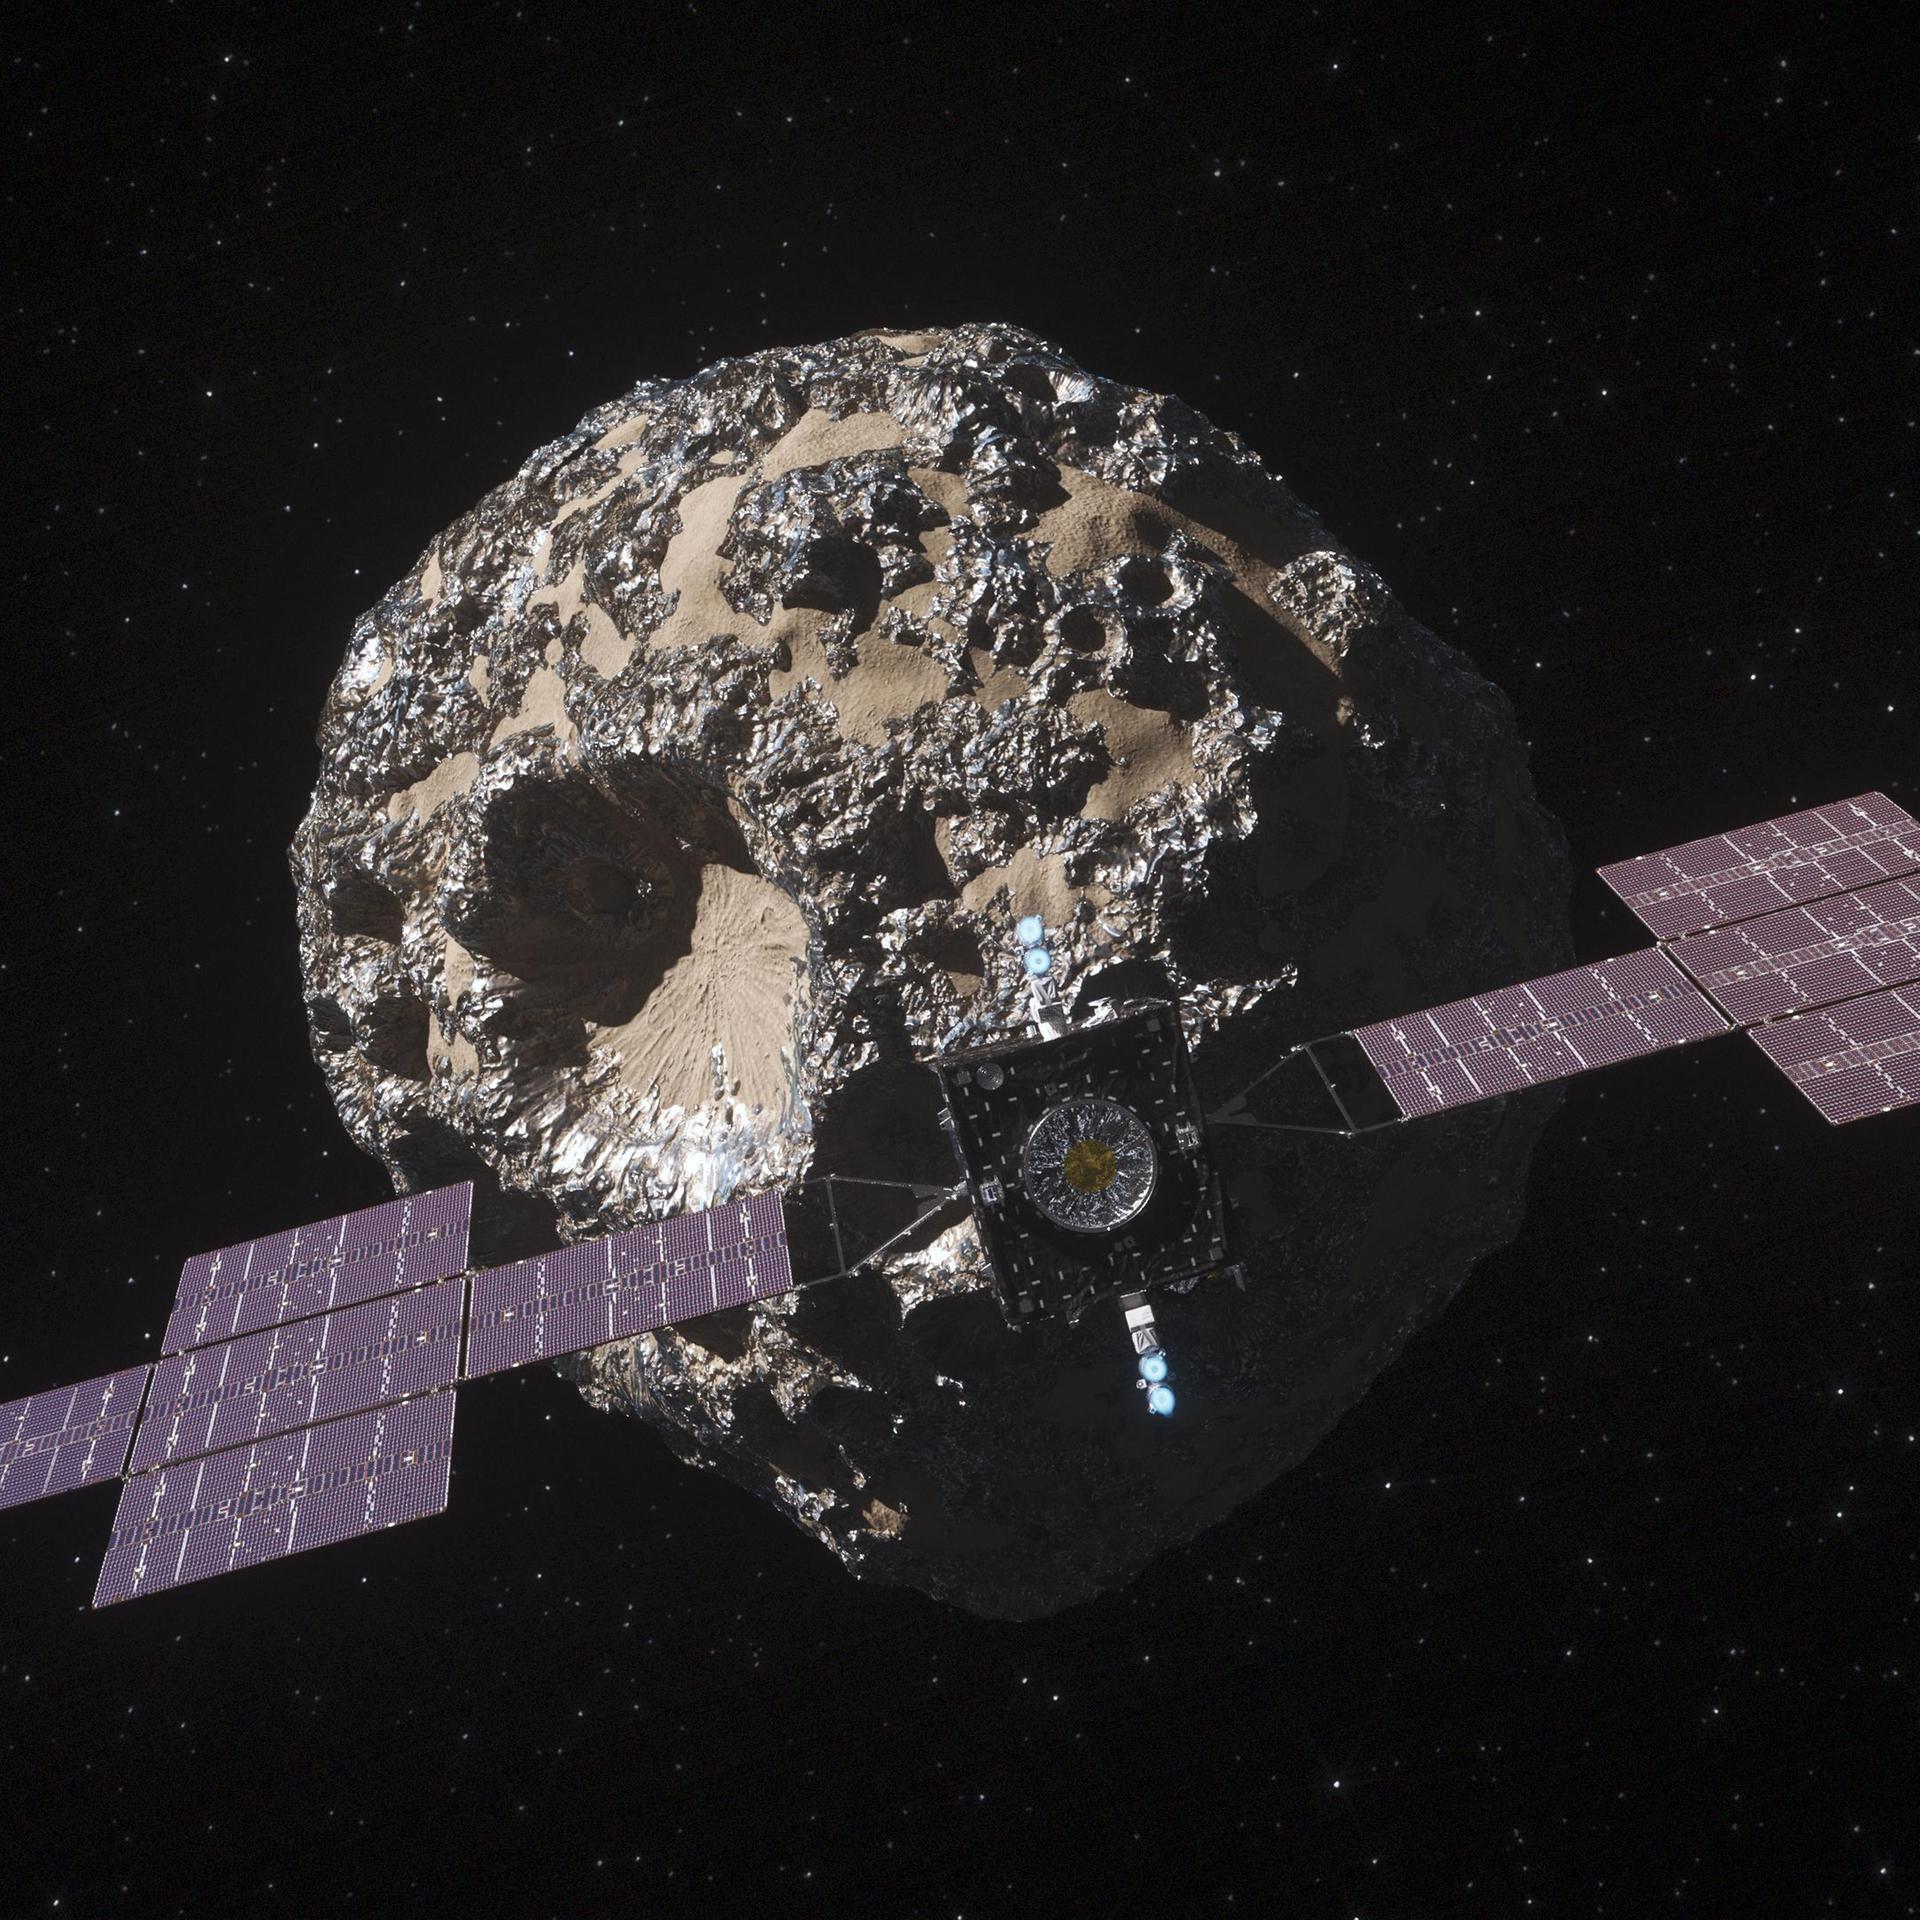 Asteroiden-Bergbau - Der kühne Traum vom Goldrausch im All